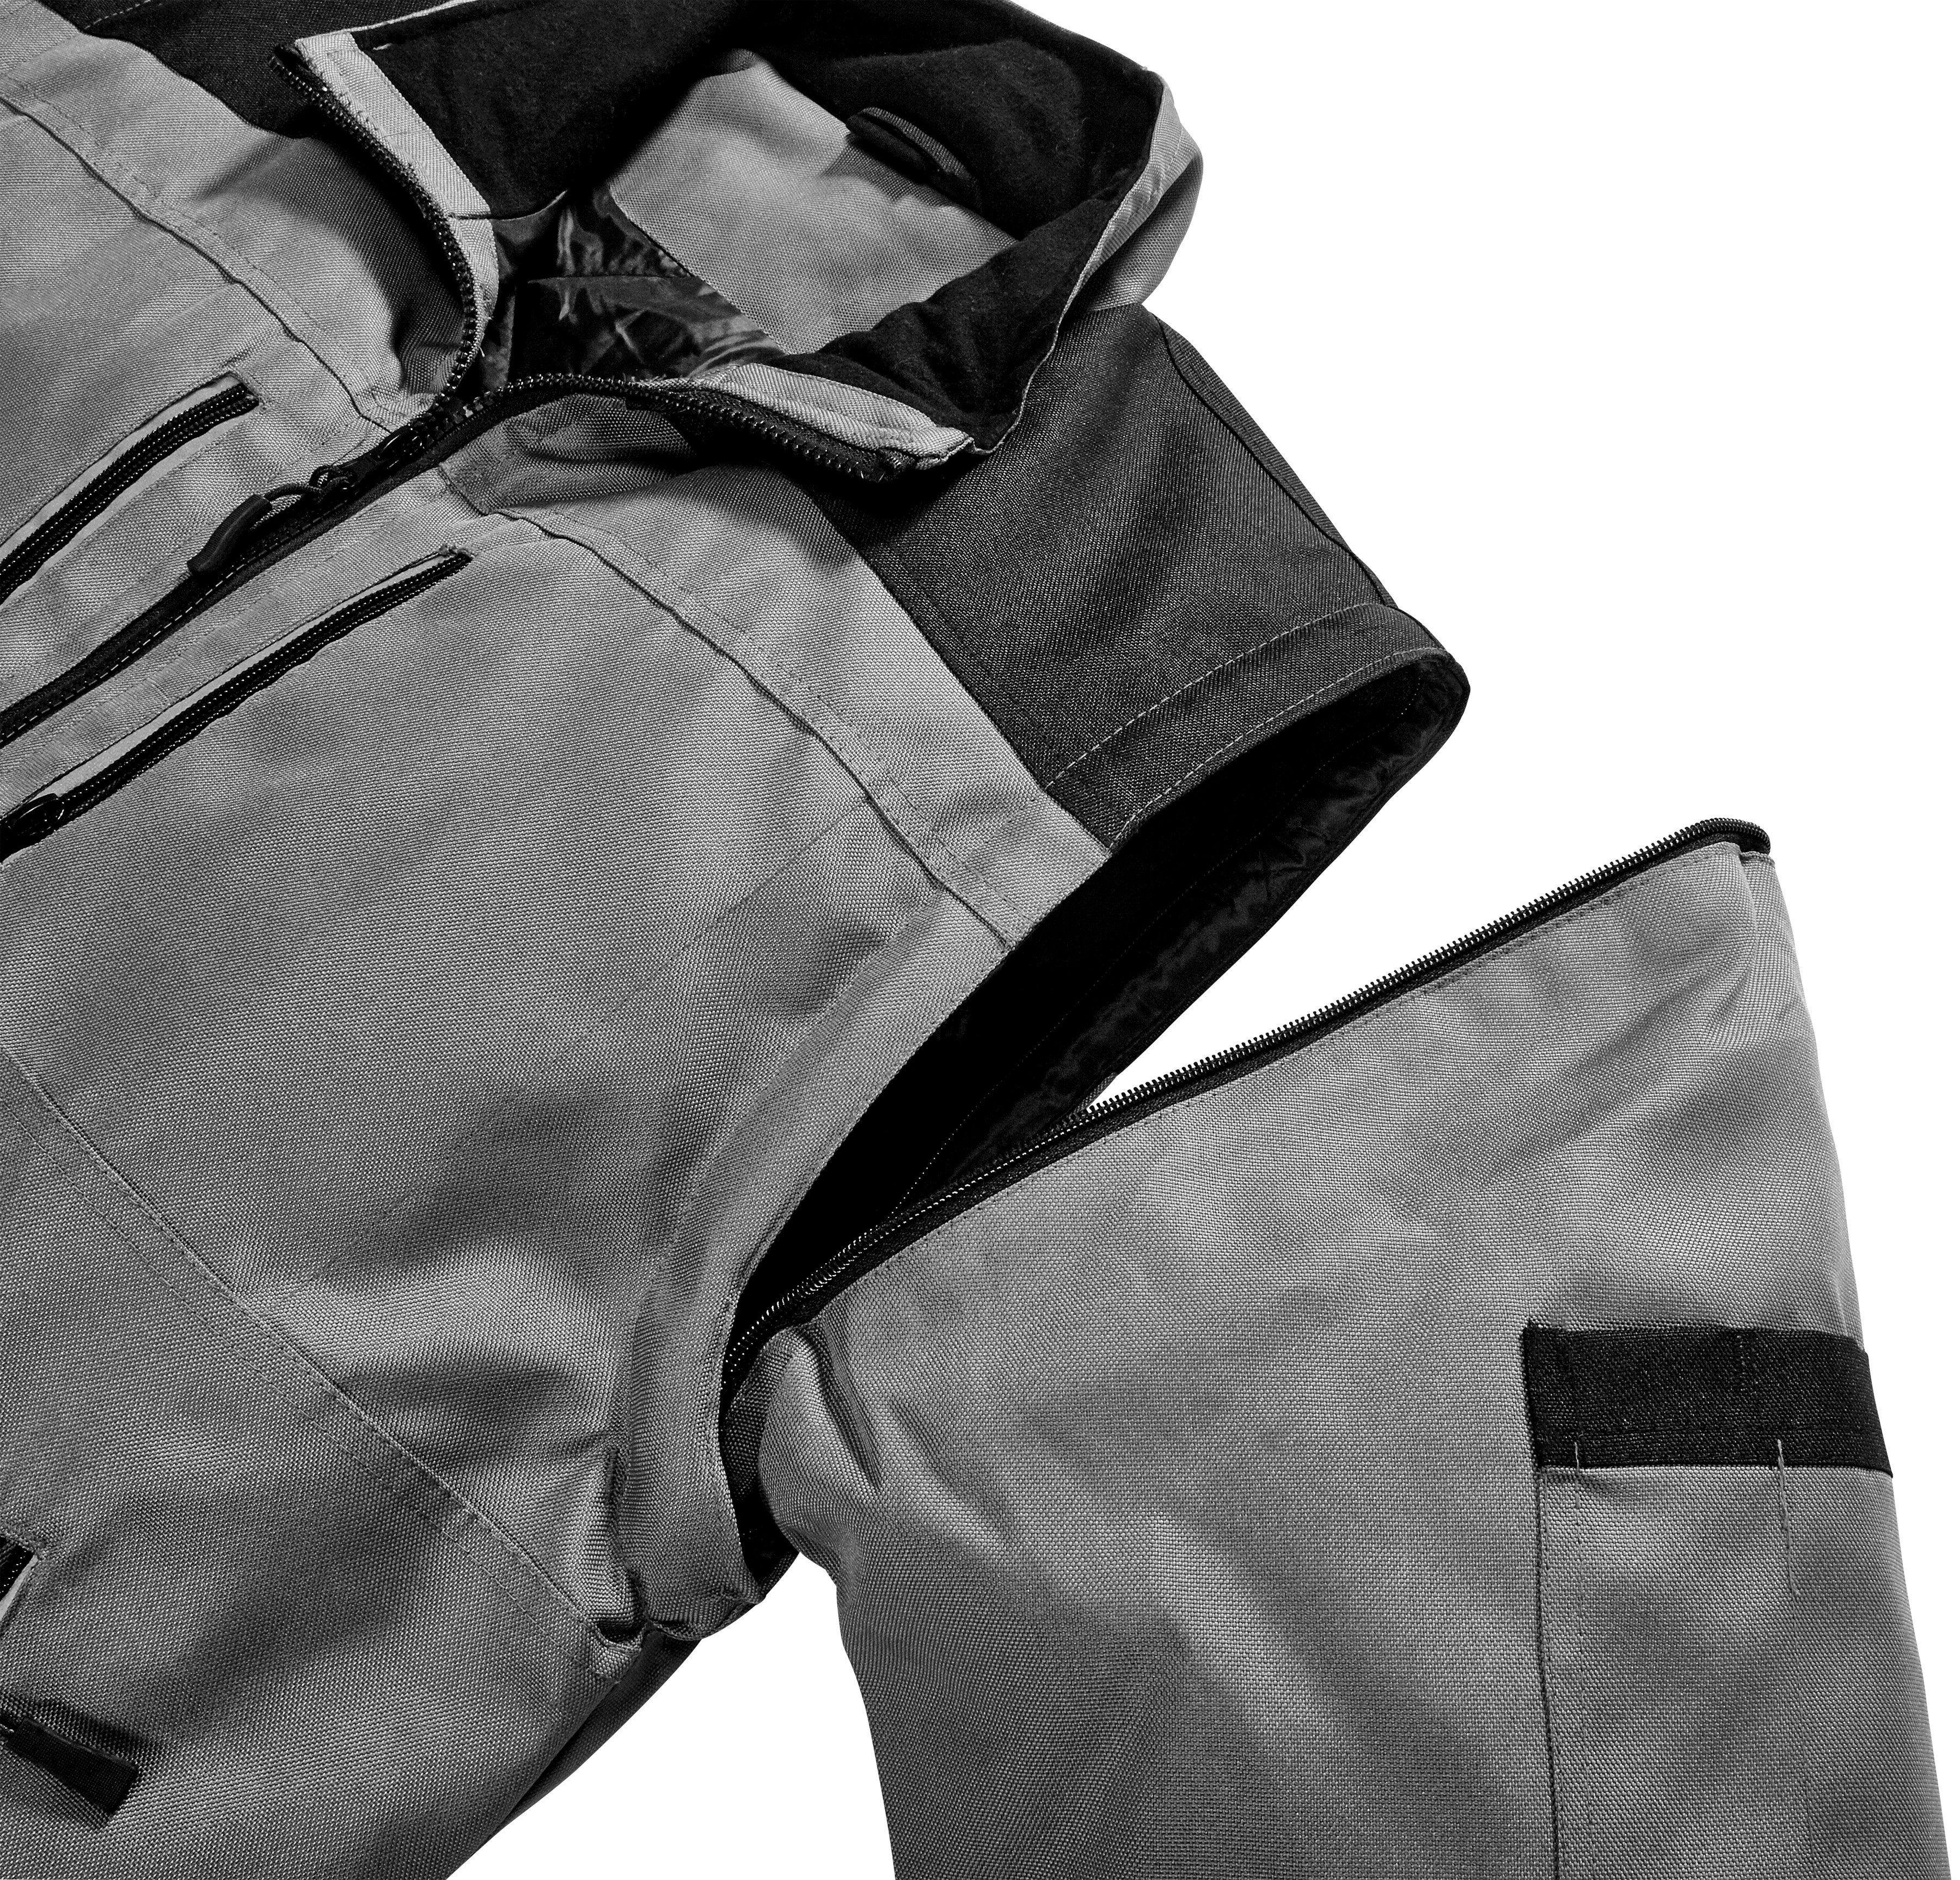 Reflexelemente Arbeitsjacke grau-schwarz more safety& Extreme